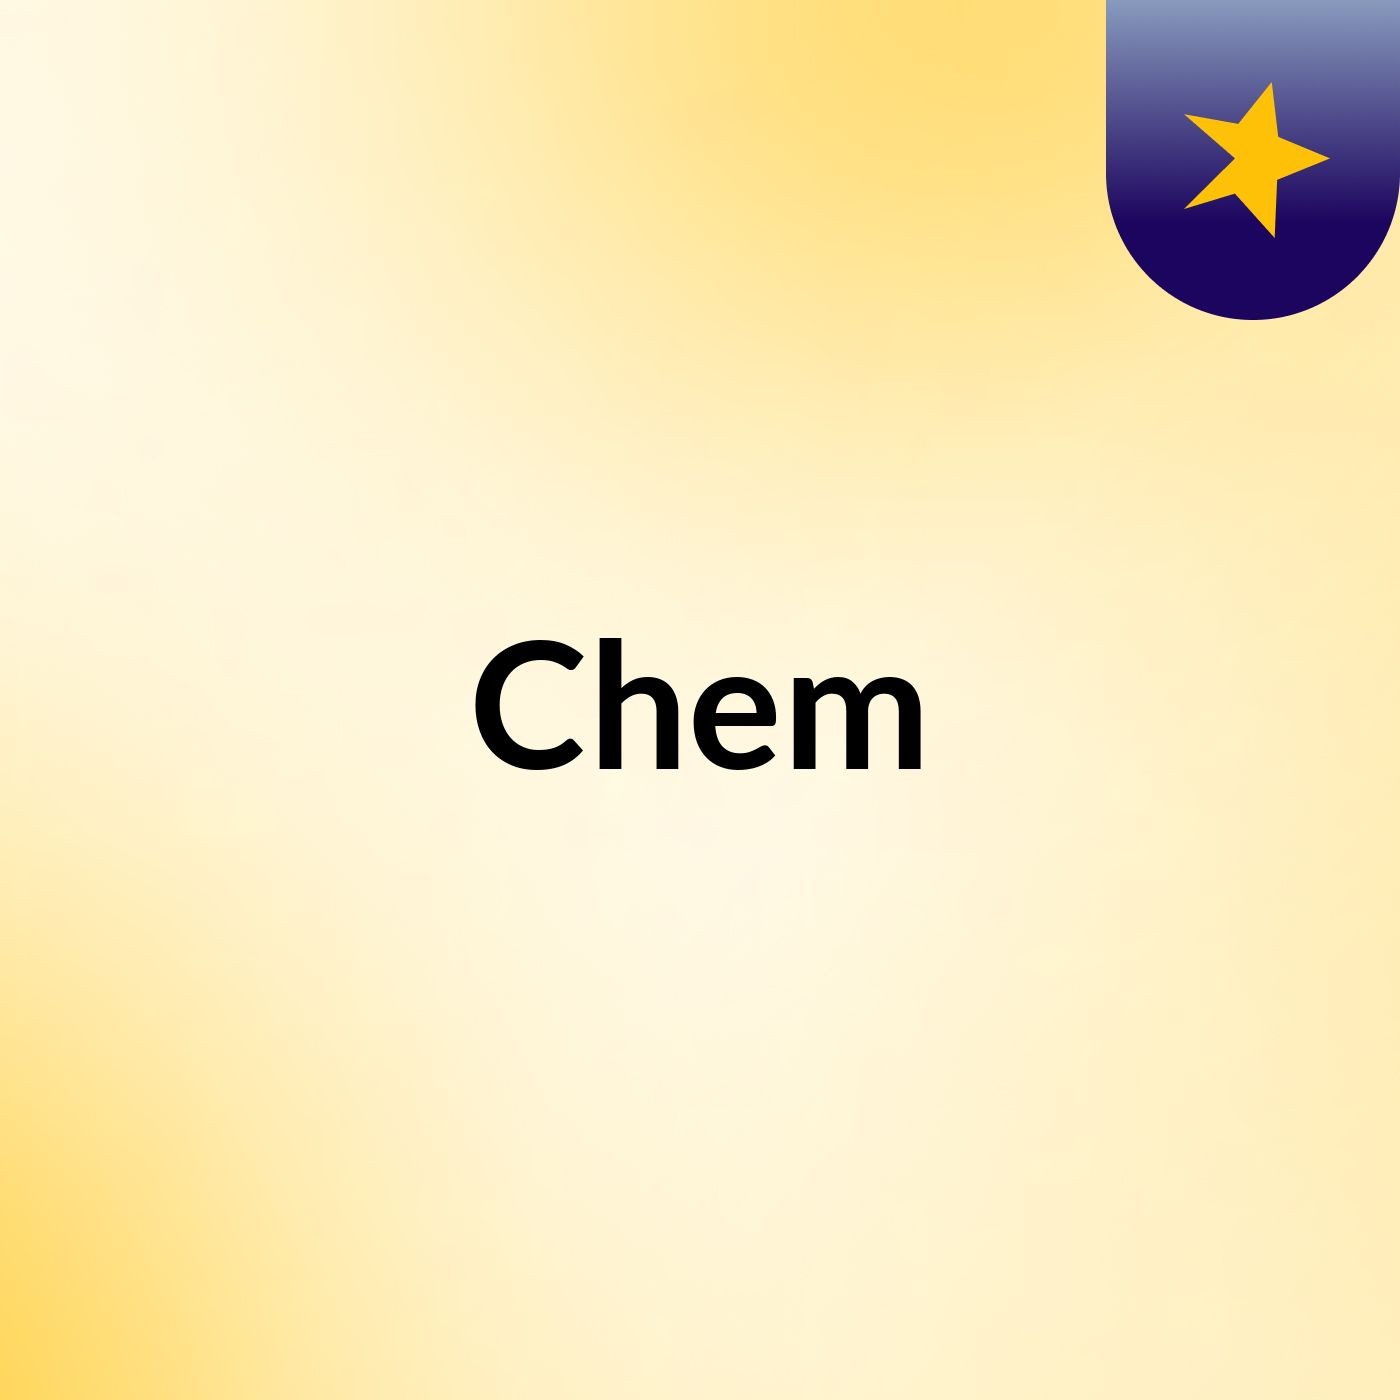 Chem